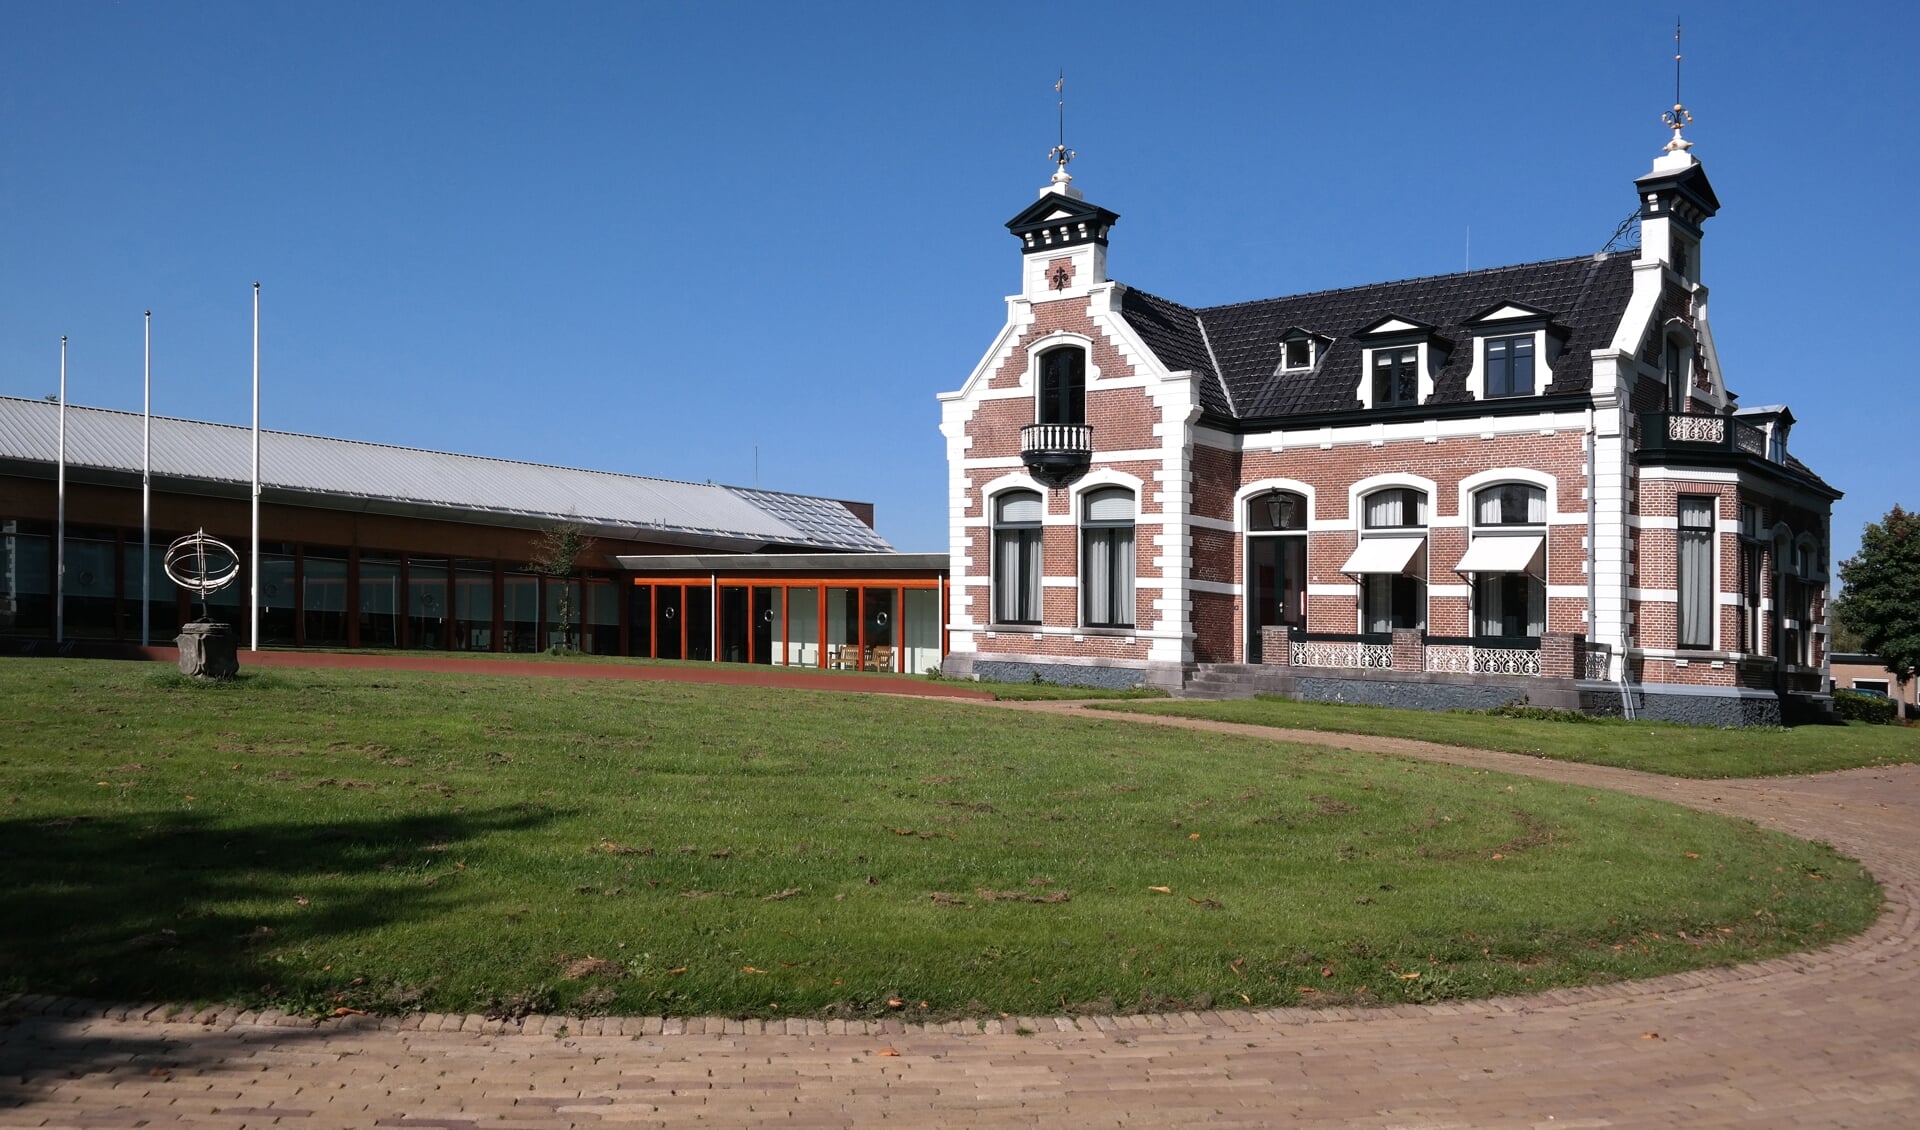 Het gemeentehuis in Kollum, met rechts villa Westenstein. Woningbouw opdit terrein is niet toegestaan.